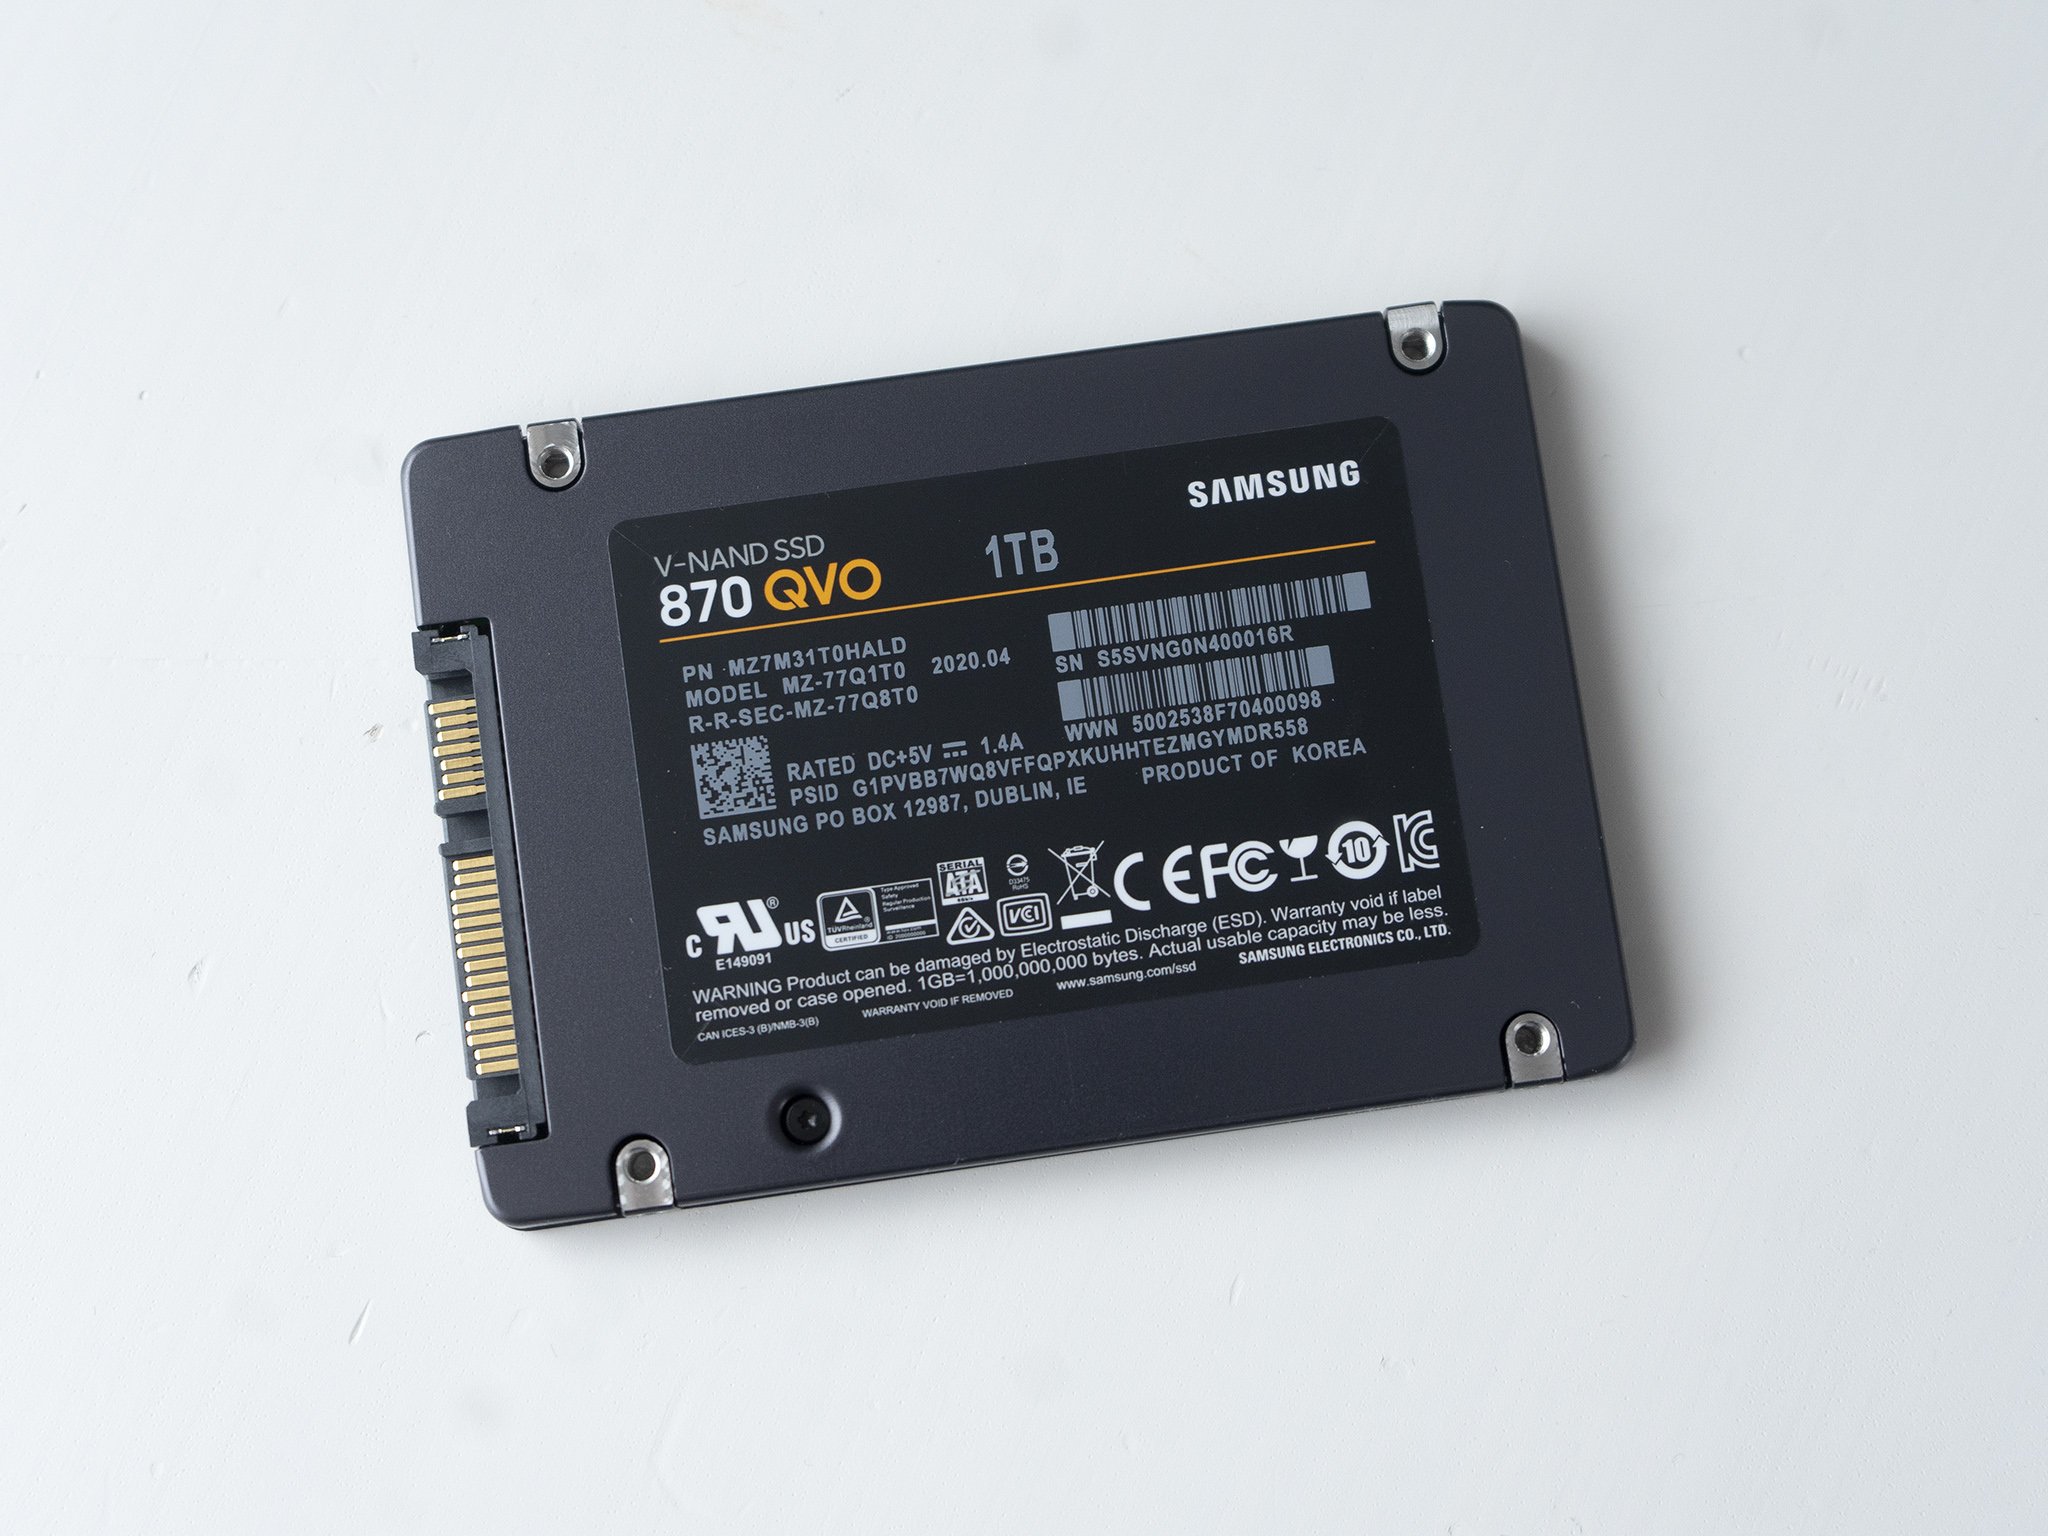 Samsung 870 Evo 2000 Gb